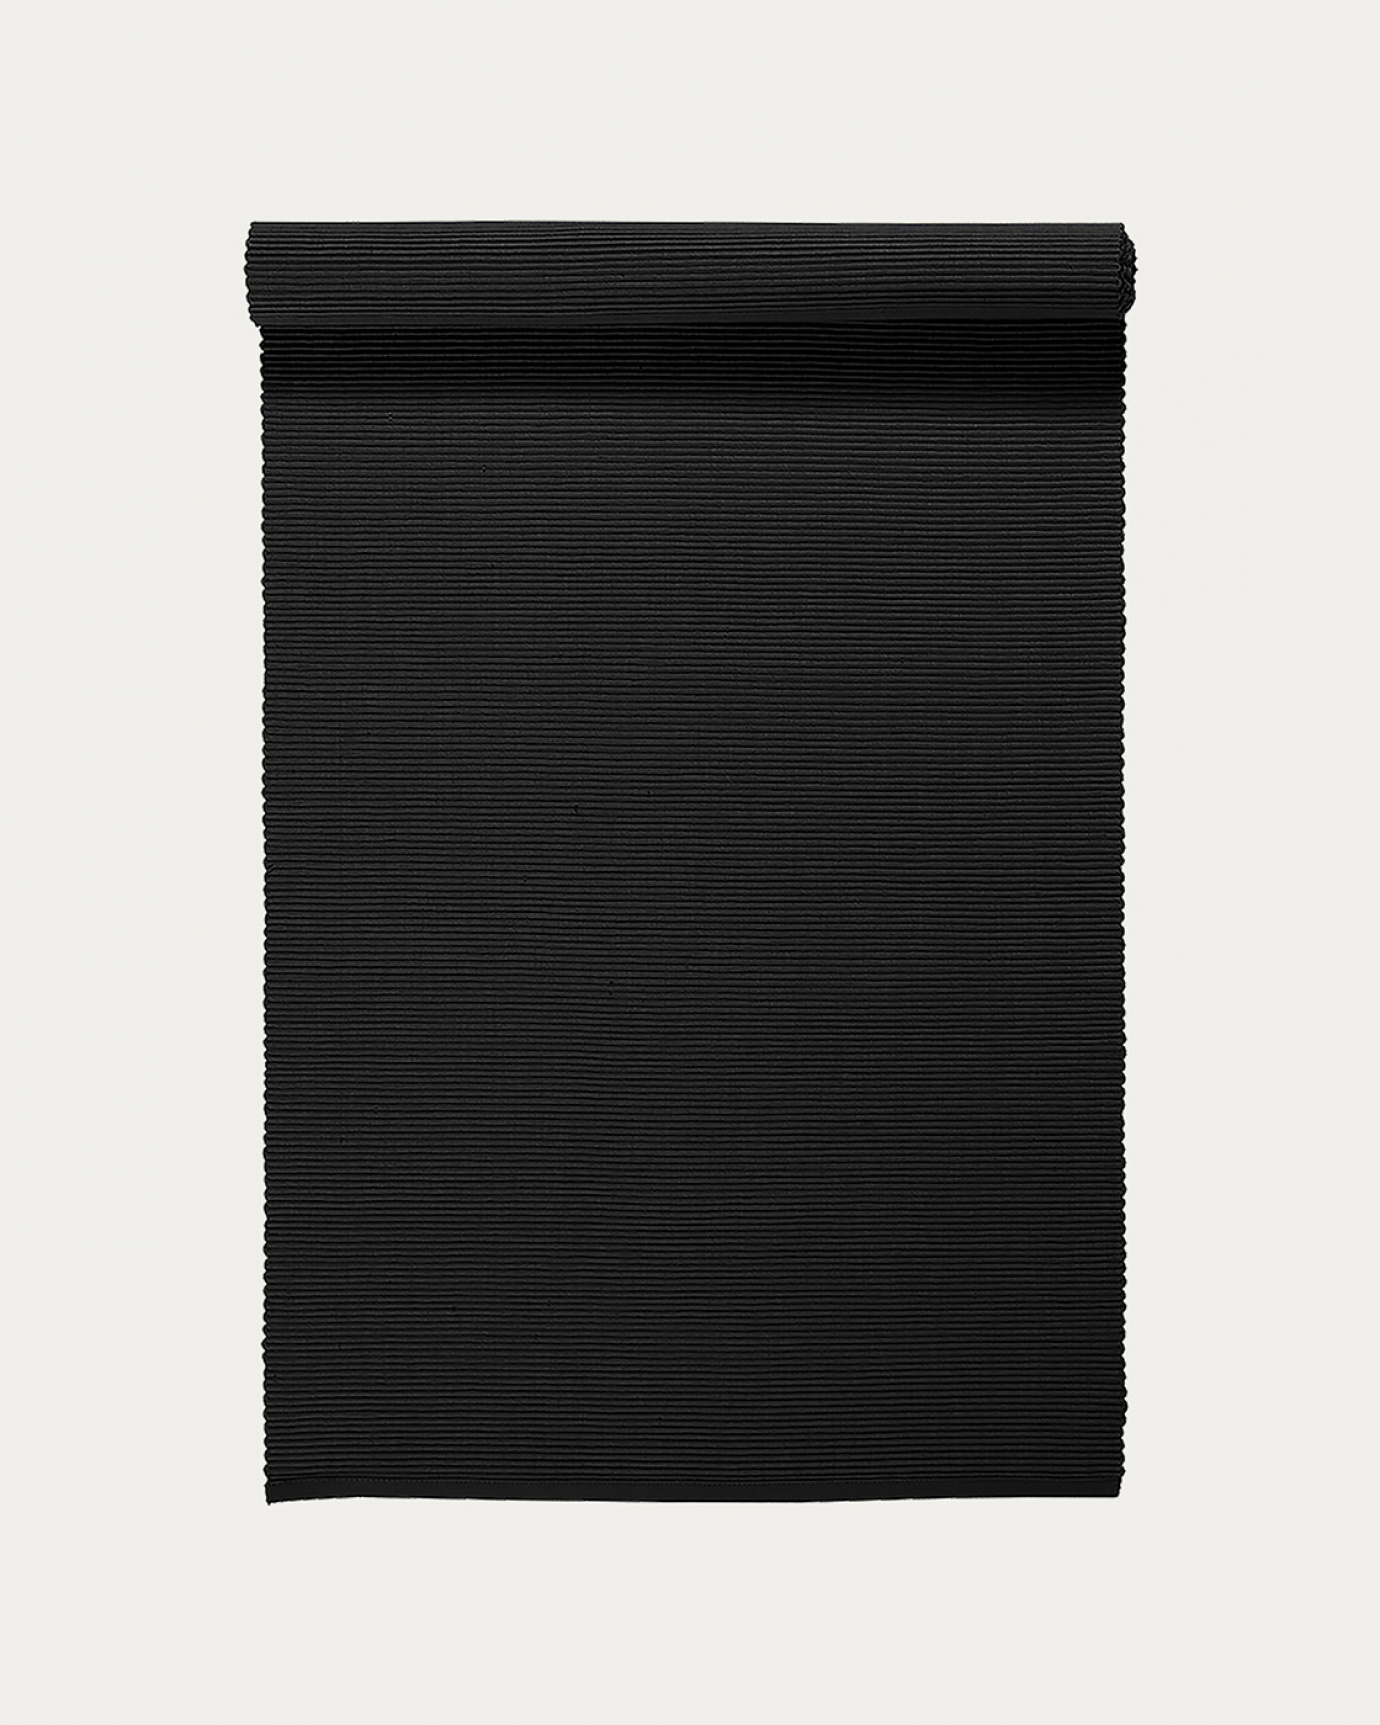 Produktbild schwarz UNI Tischläufer aus weicher Baumwolle in Rippenqualität von LINUM DESIGN. Größe 45x150 cm.